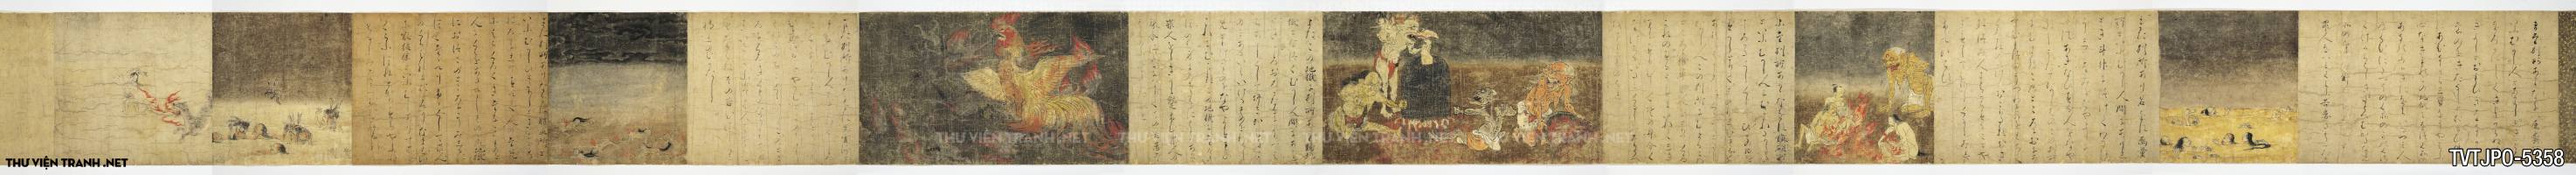 Tranh Nhật Bản cổ cuộn giấy cói về Địa ngục